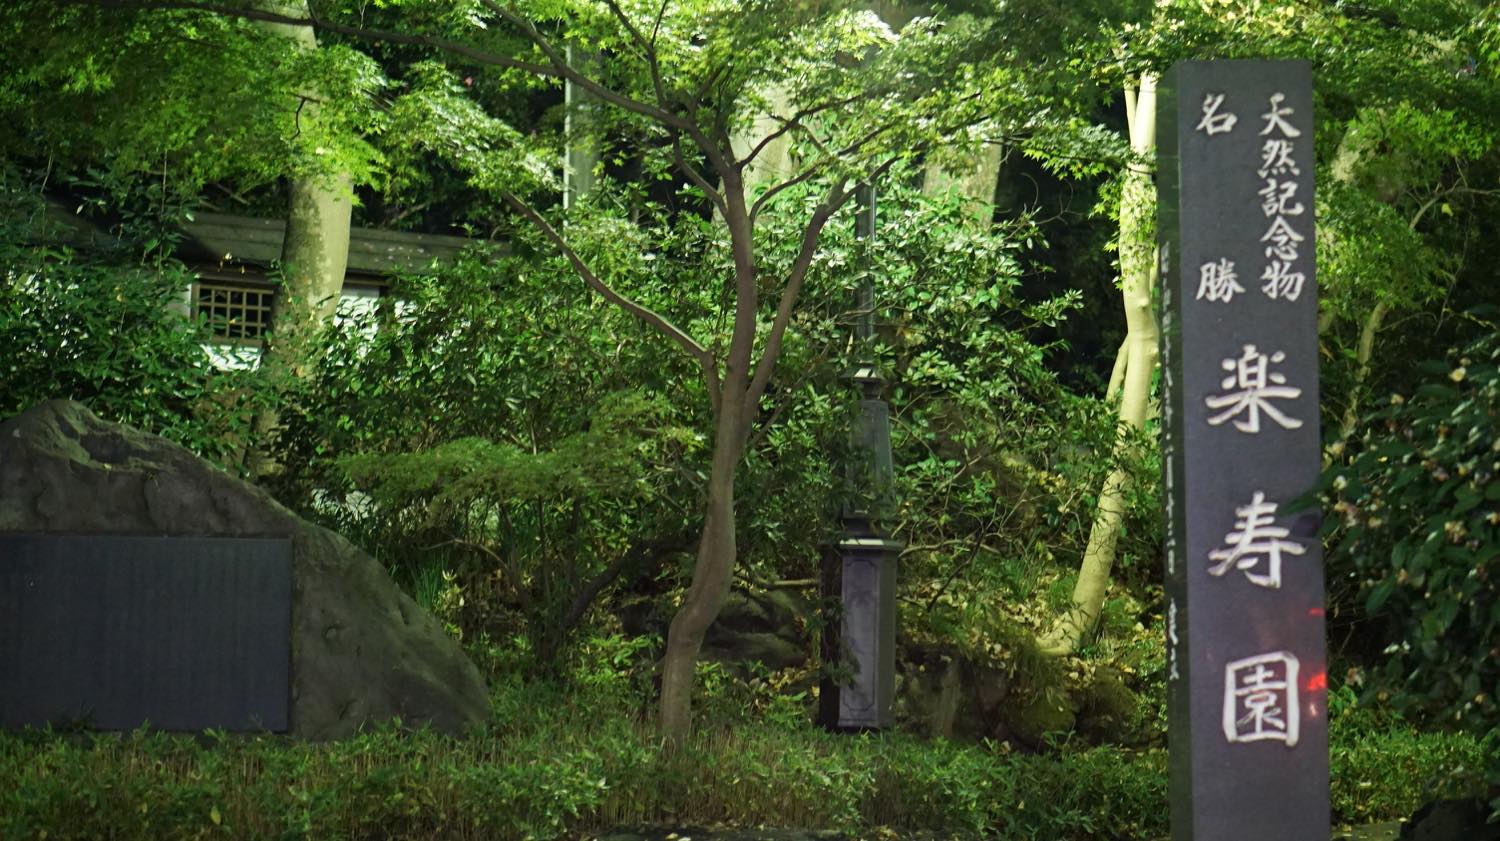 楽寿園 四季によって変わる庭園と三島市の歴史を知れる駅前の自然公園 伊豆駿東まっぷ